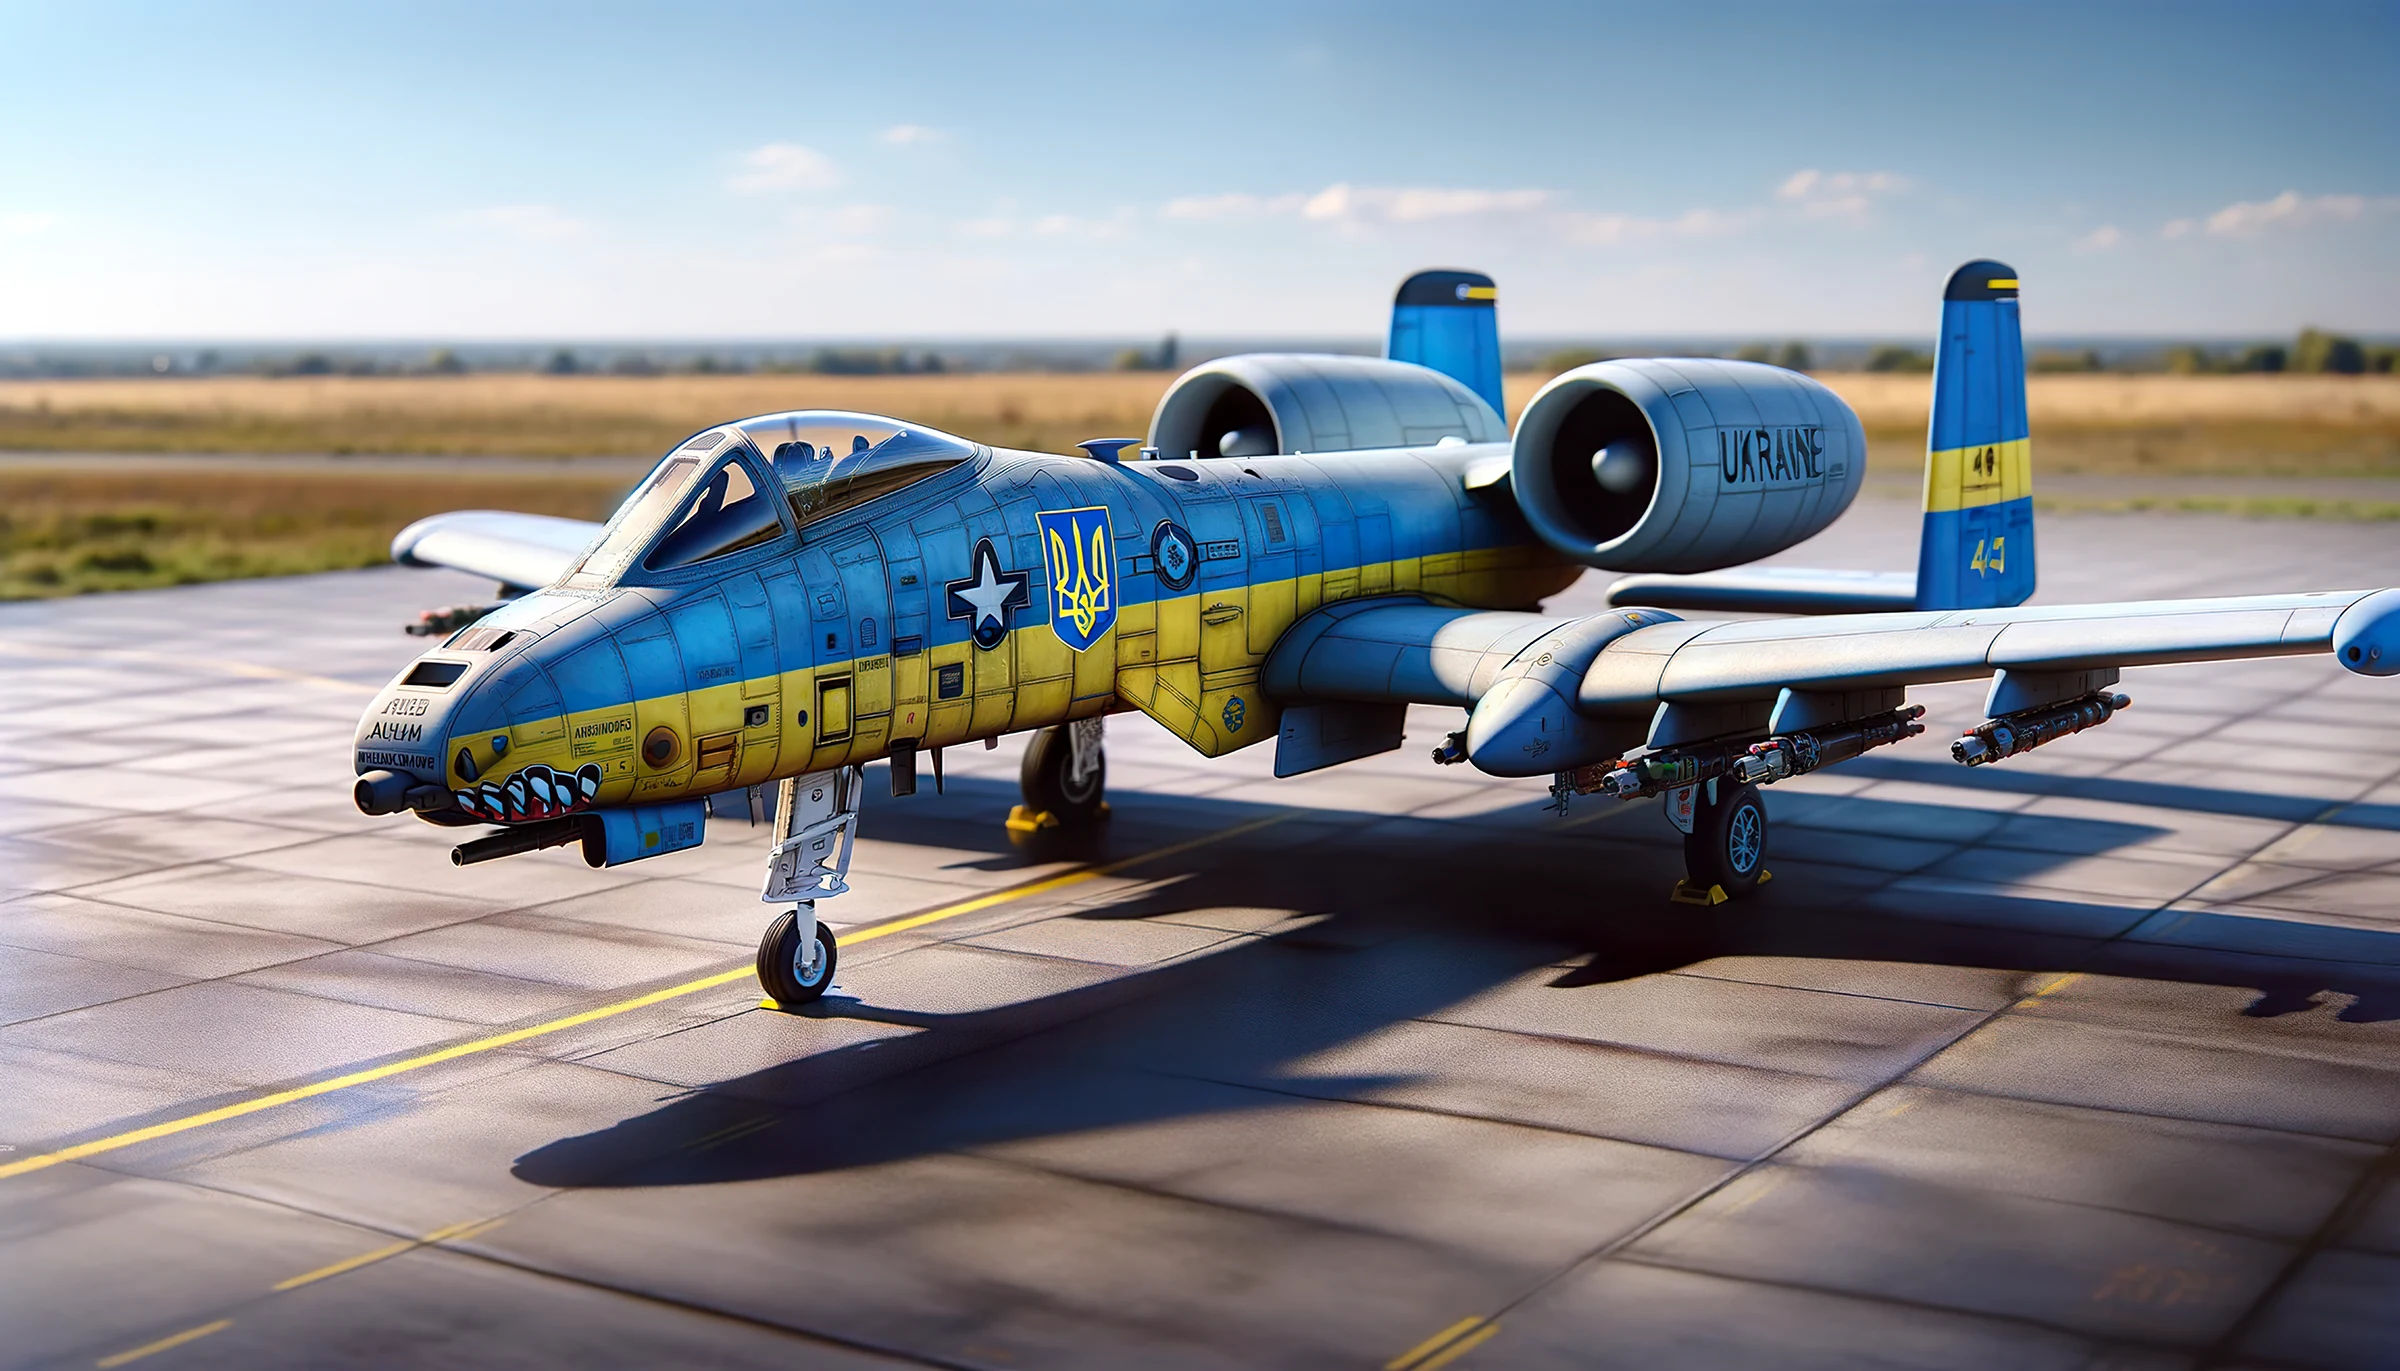 Imagen de un avión A-10 con patrón de pintura ucraniano, desarrollado por IA con fines ilustrativos.